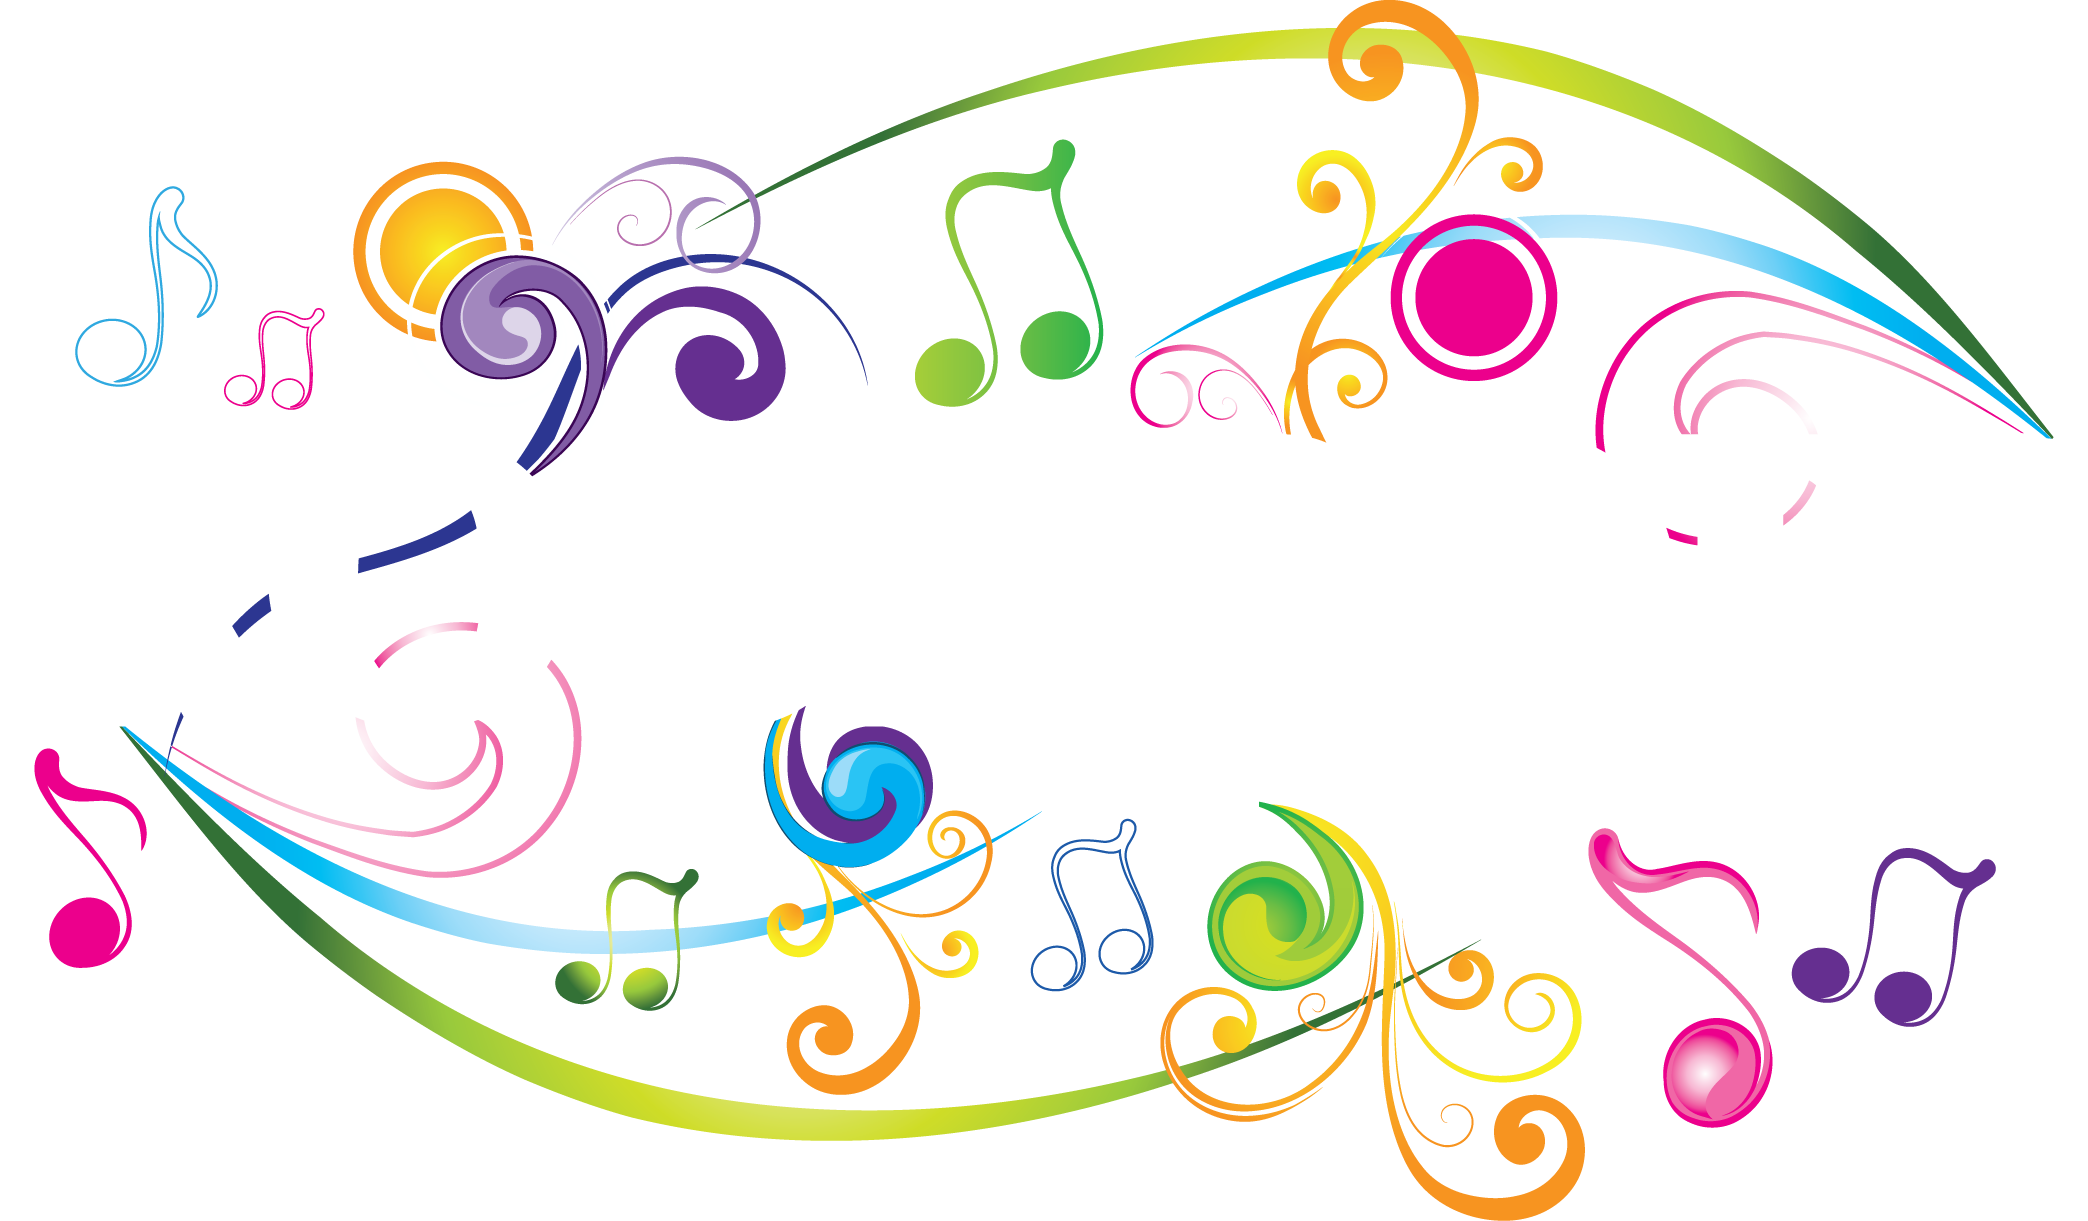 RockPops